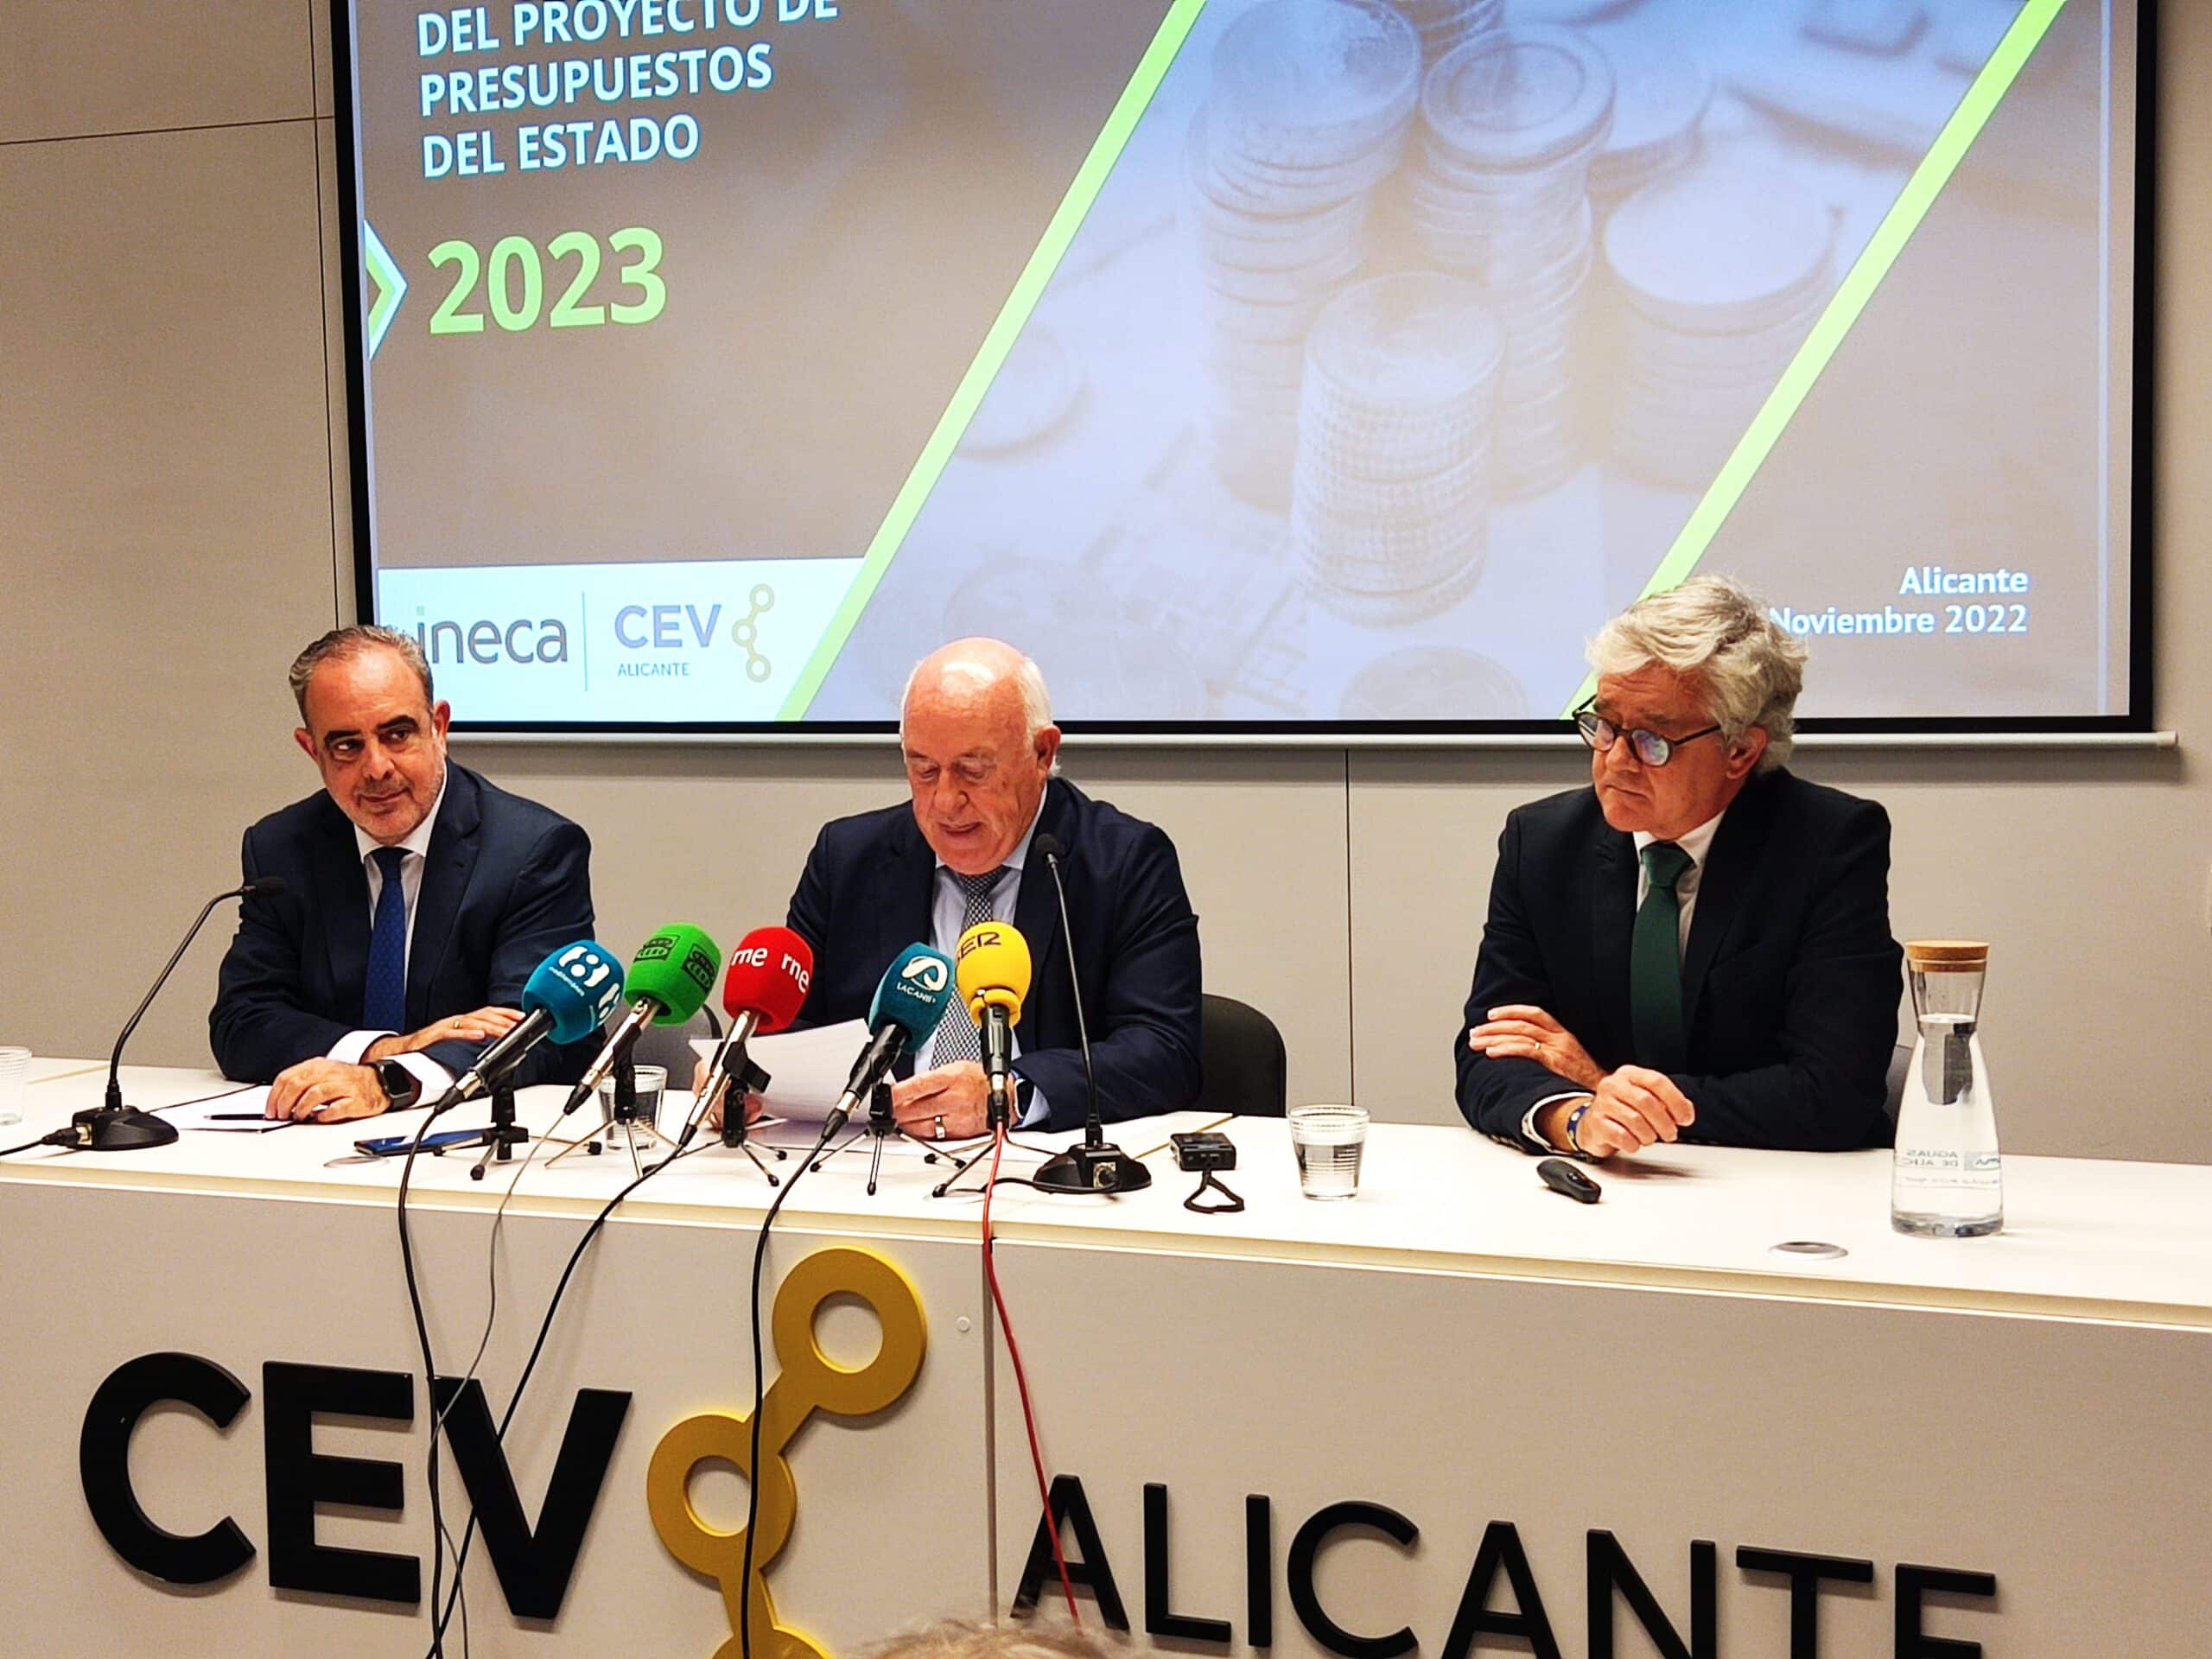 CEV Alicante e INECA ponen el foco en la falta de transparencia e información de las inversiones, que agravan el déficit inversor en la provincia